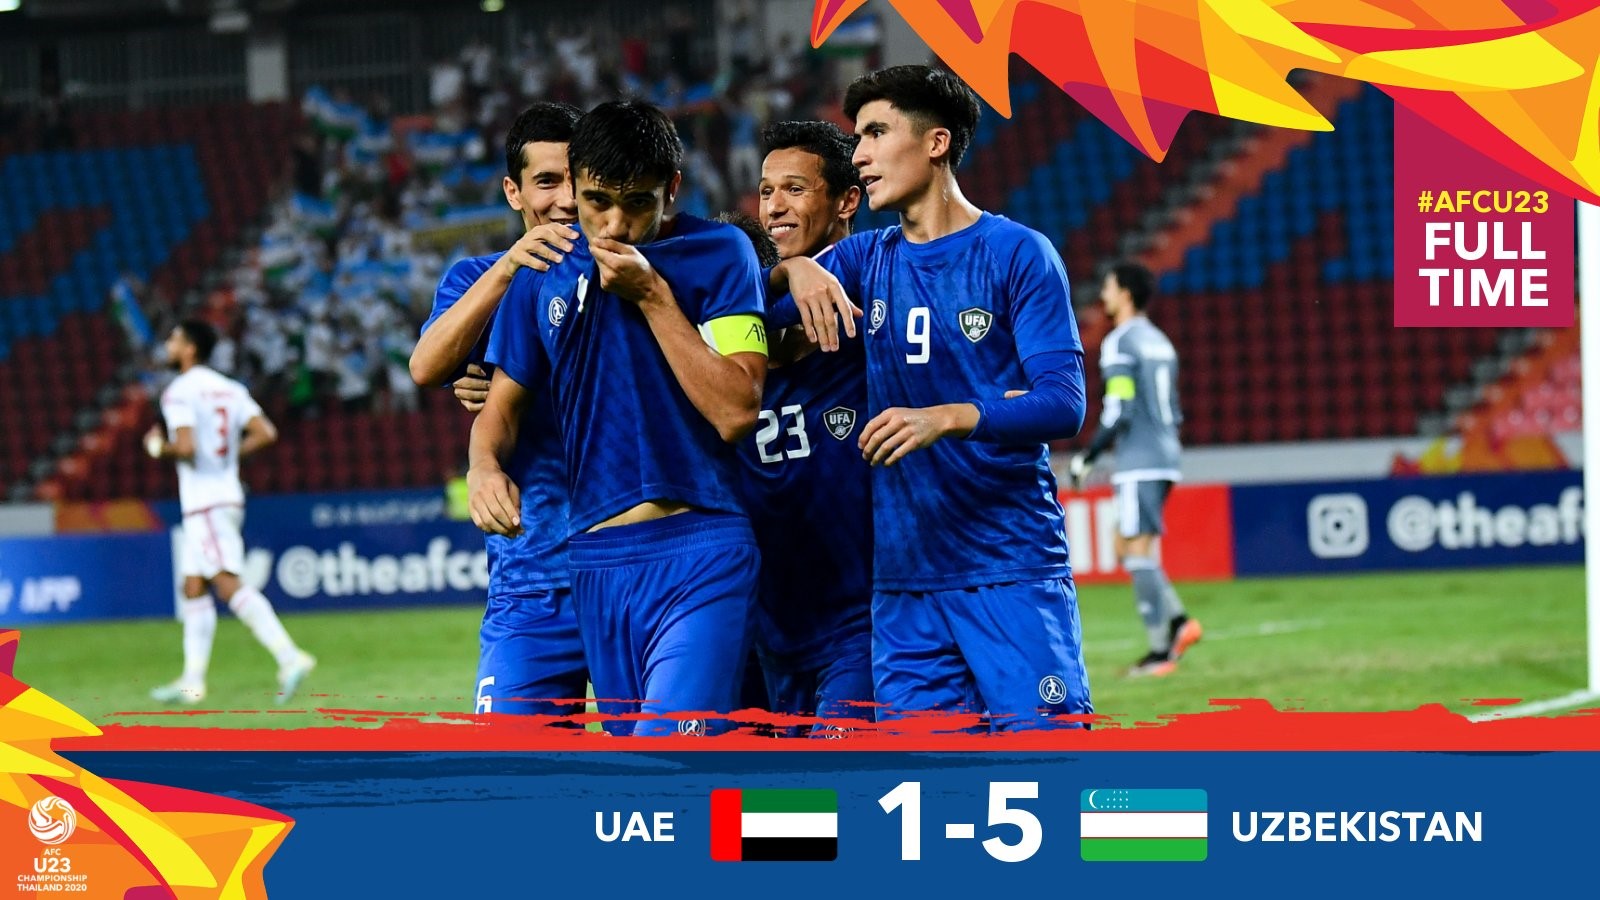 Nhà ĐKVĐ U23 Uzbekistan đã giành chiến thắng với tỷ số 